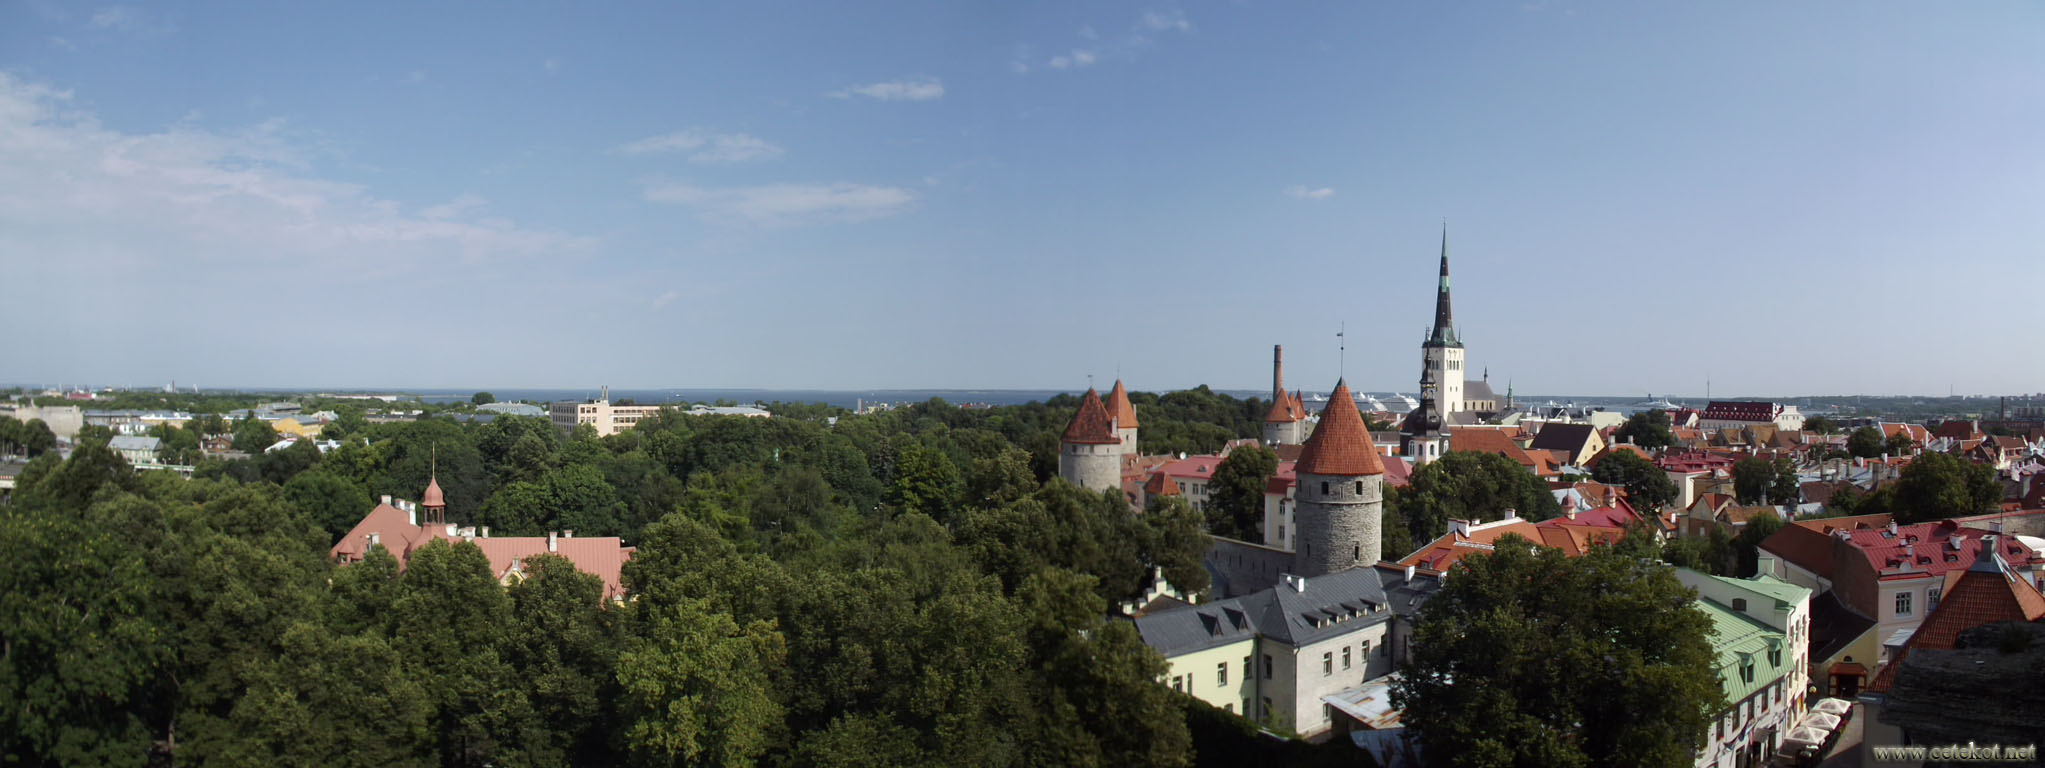 Таллин: панорама города.